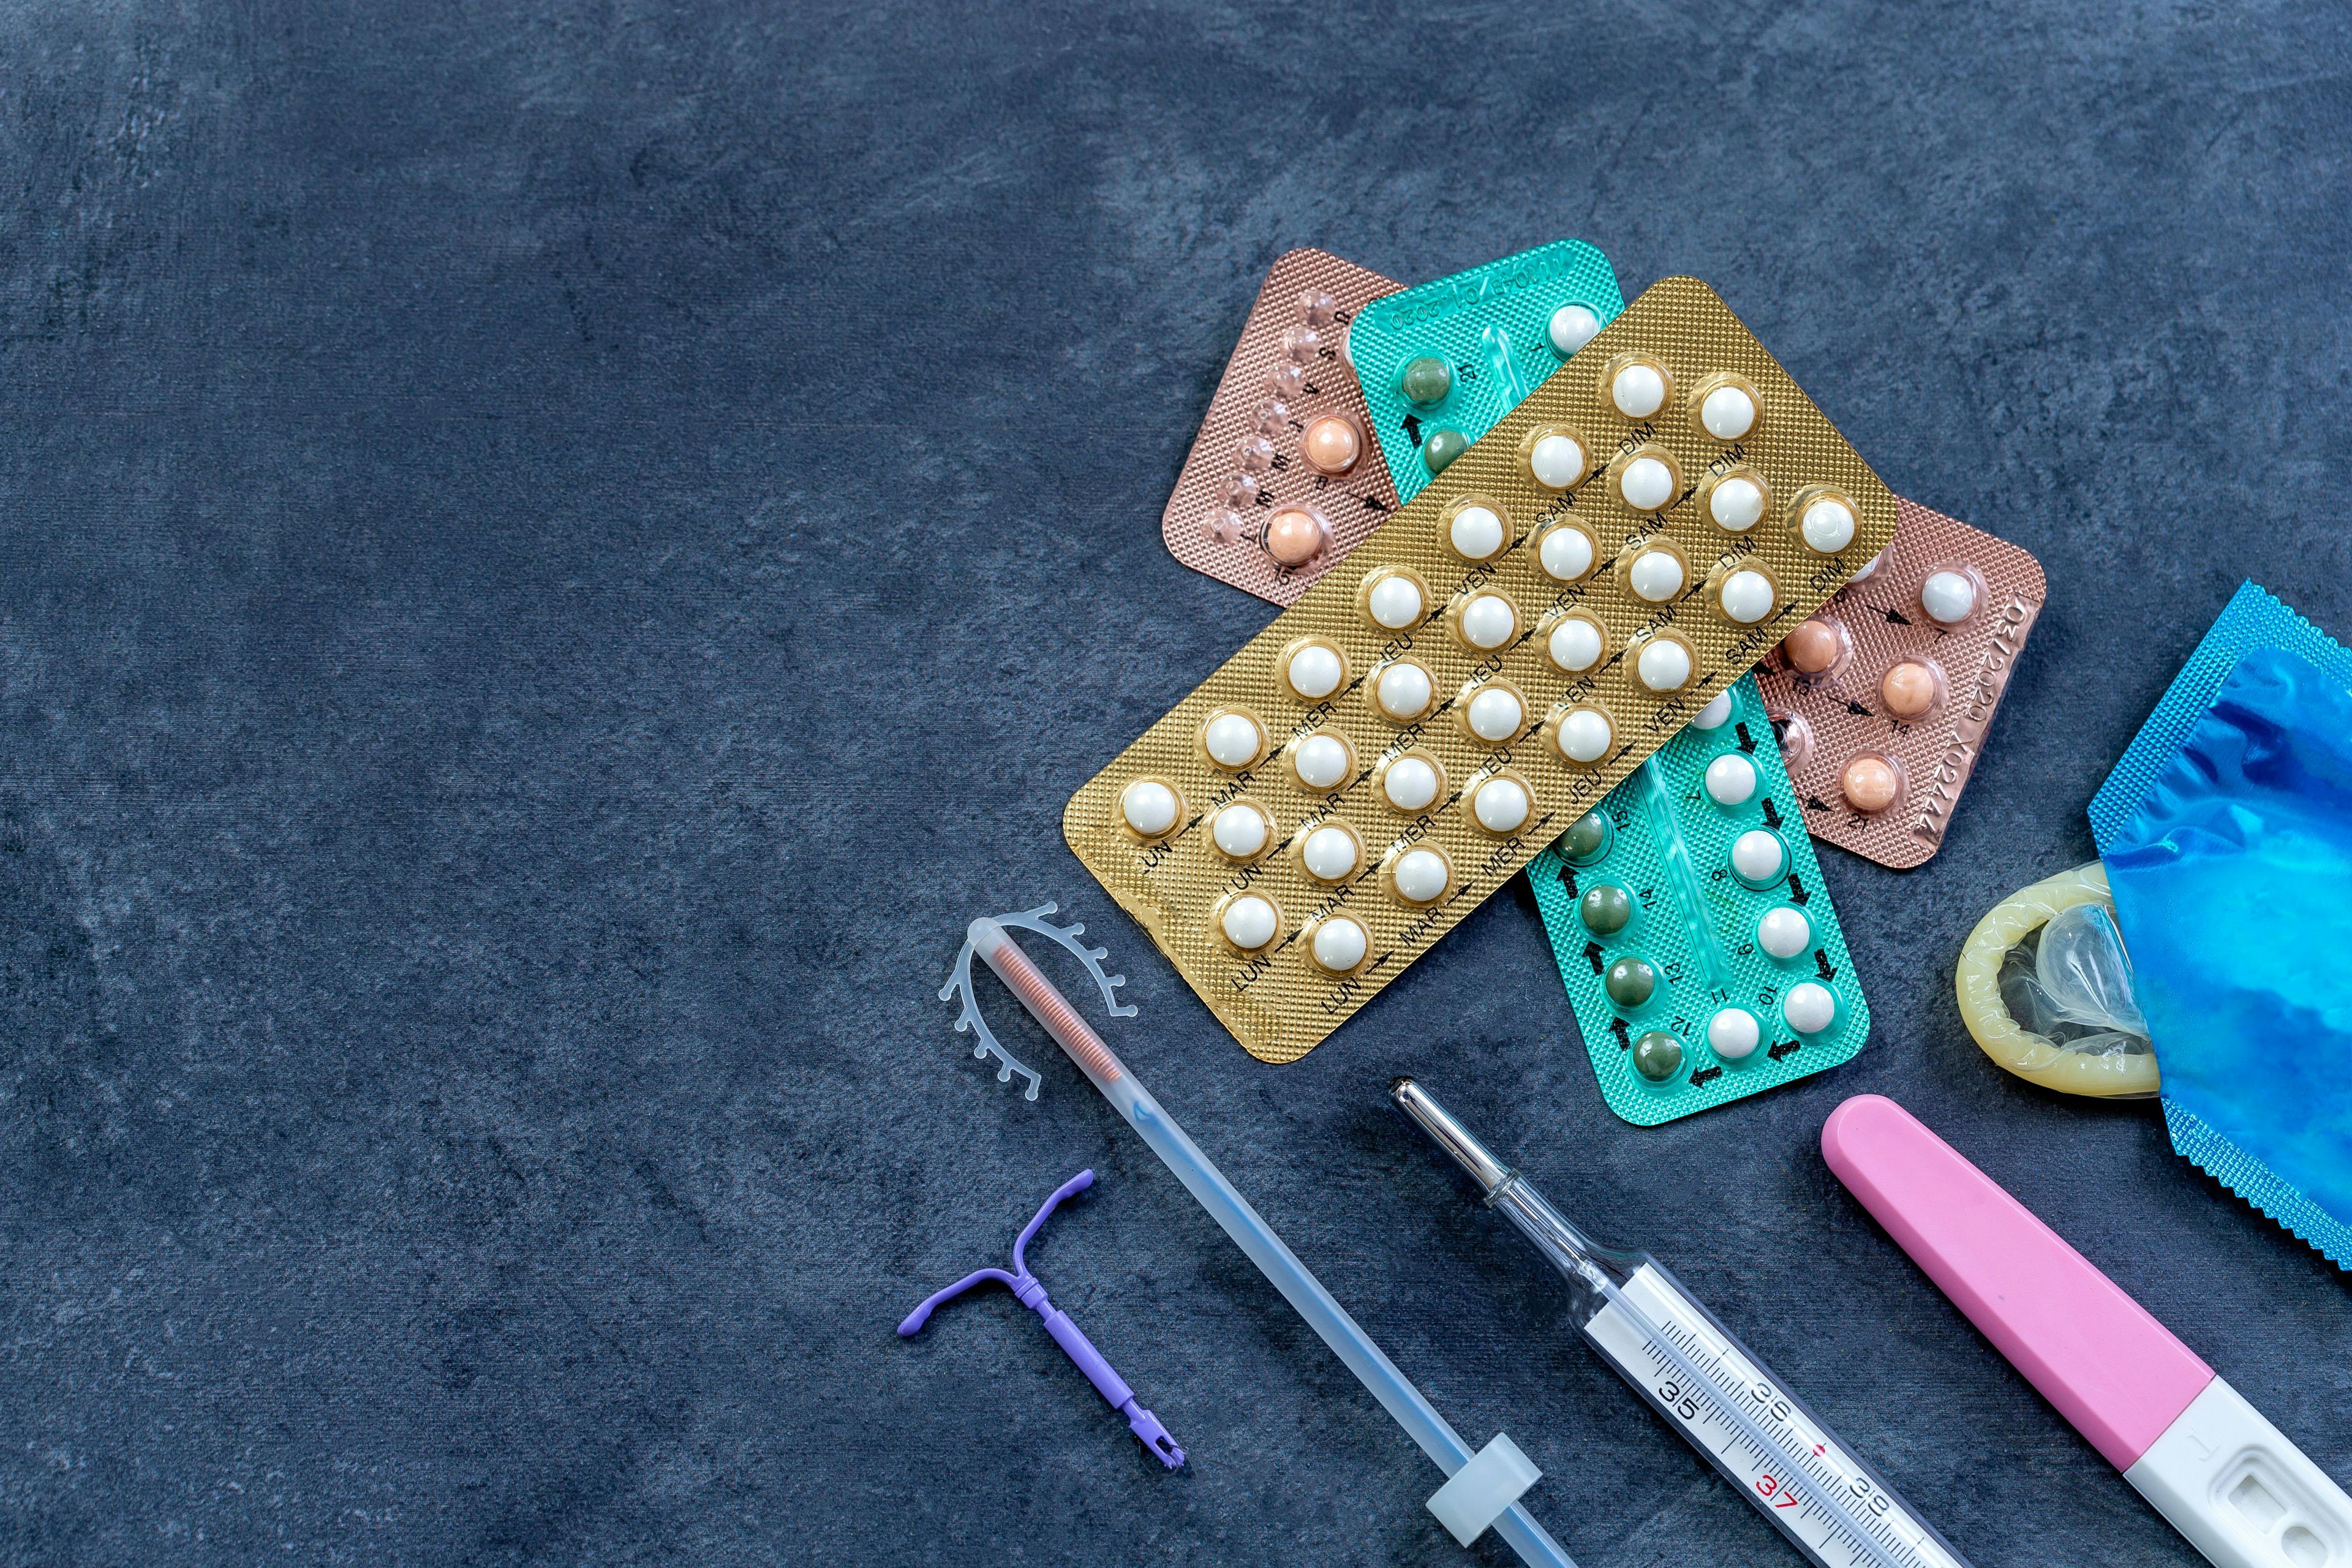 Study: COVID-19 reduced contraceptive access